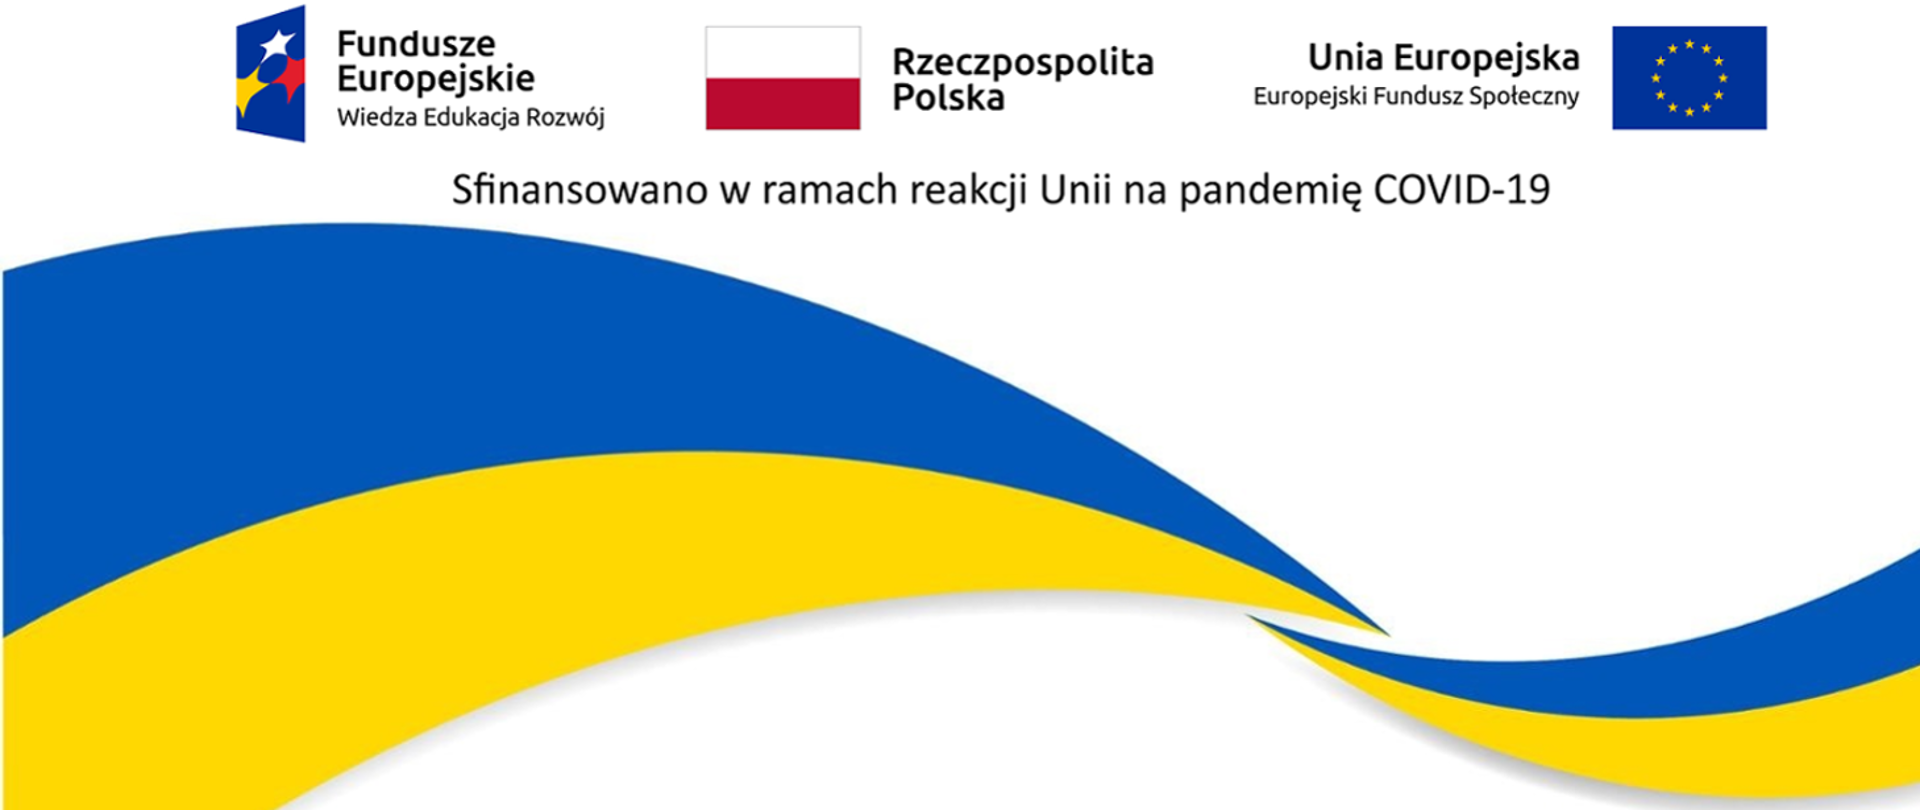 Projekt POWER Ukraine loga Funduszu Europejskiego Wiedza Edukacja Rozwój, Rzeczpospolita Polska, Unia Europejska